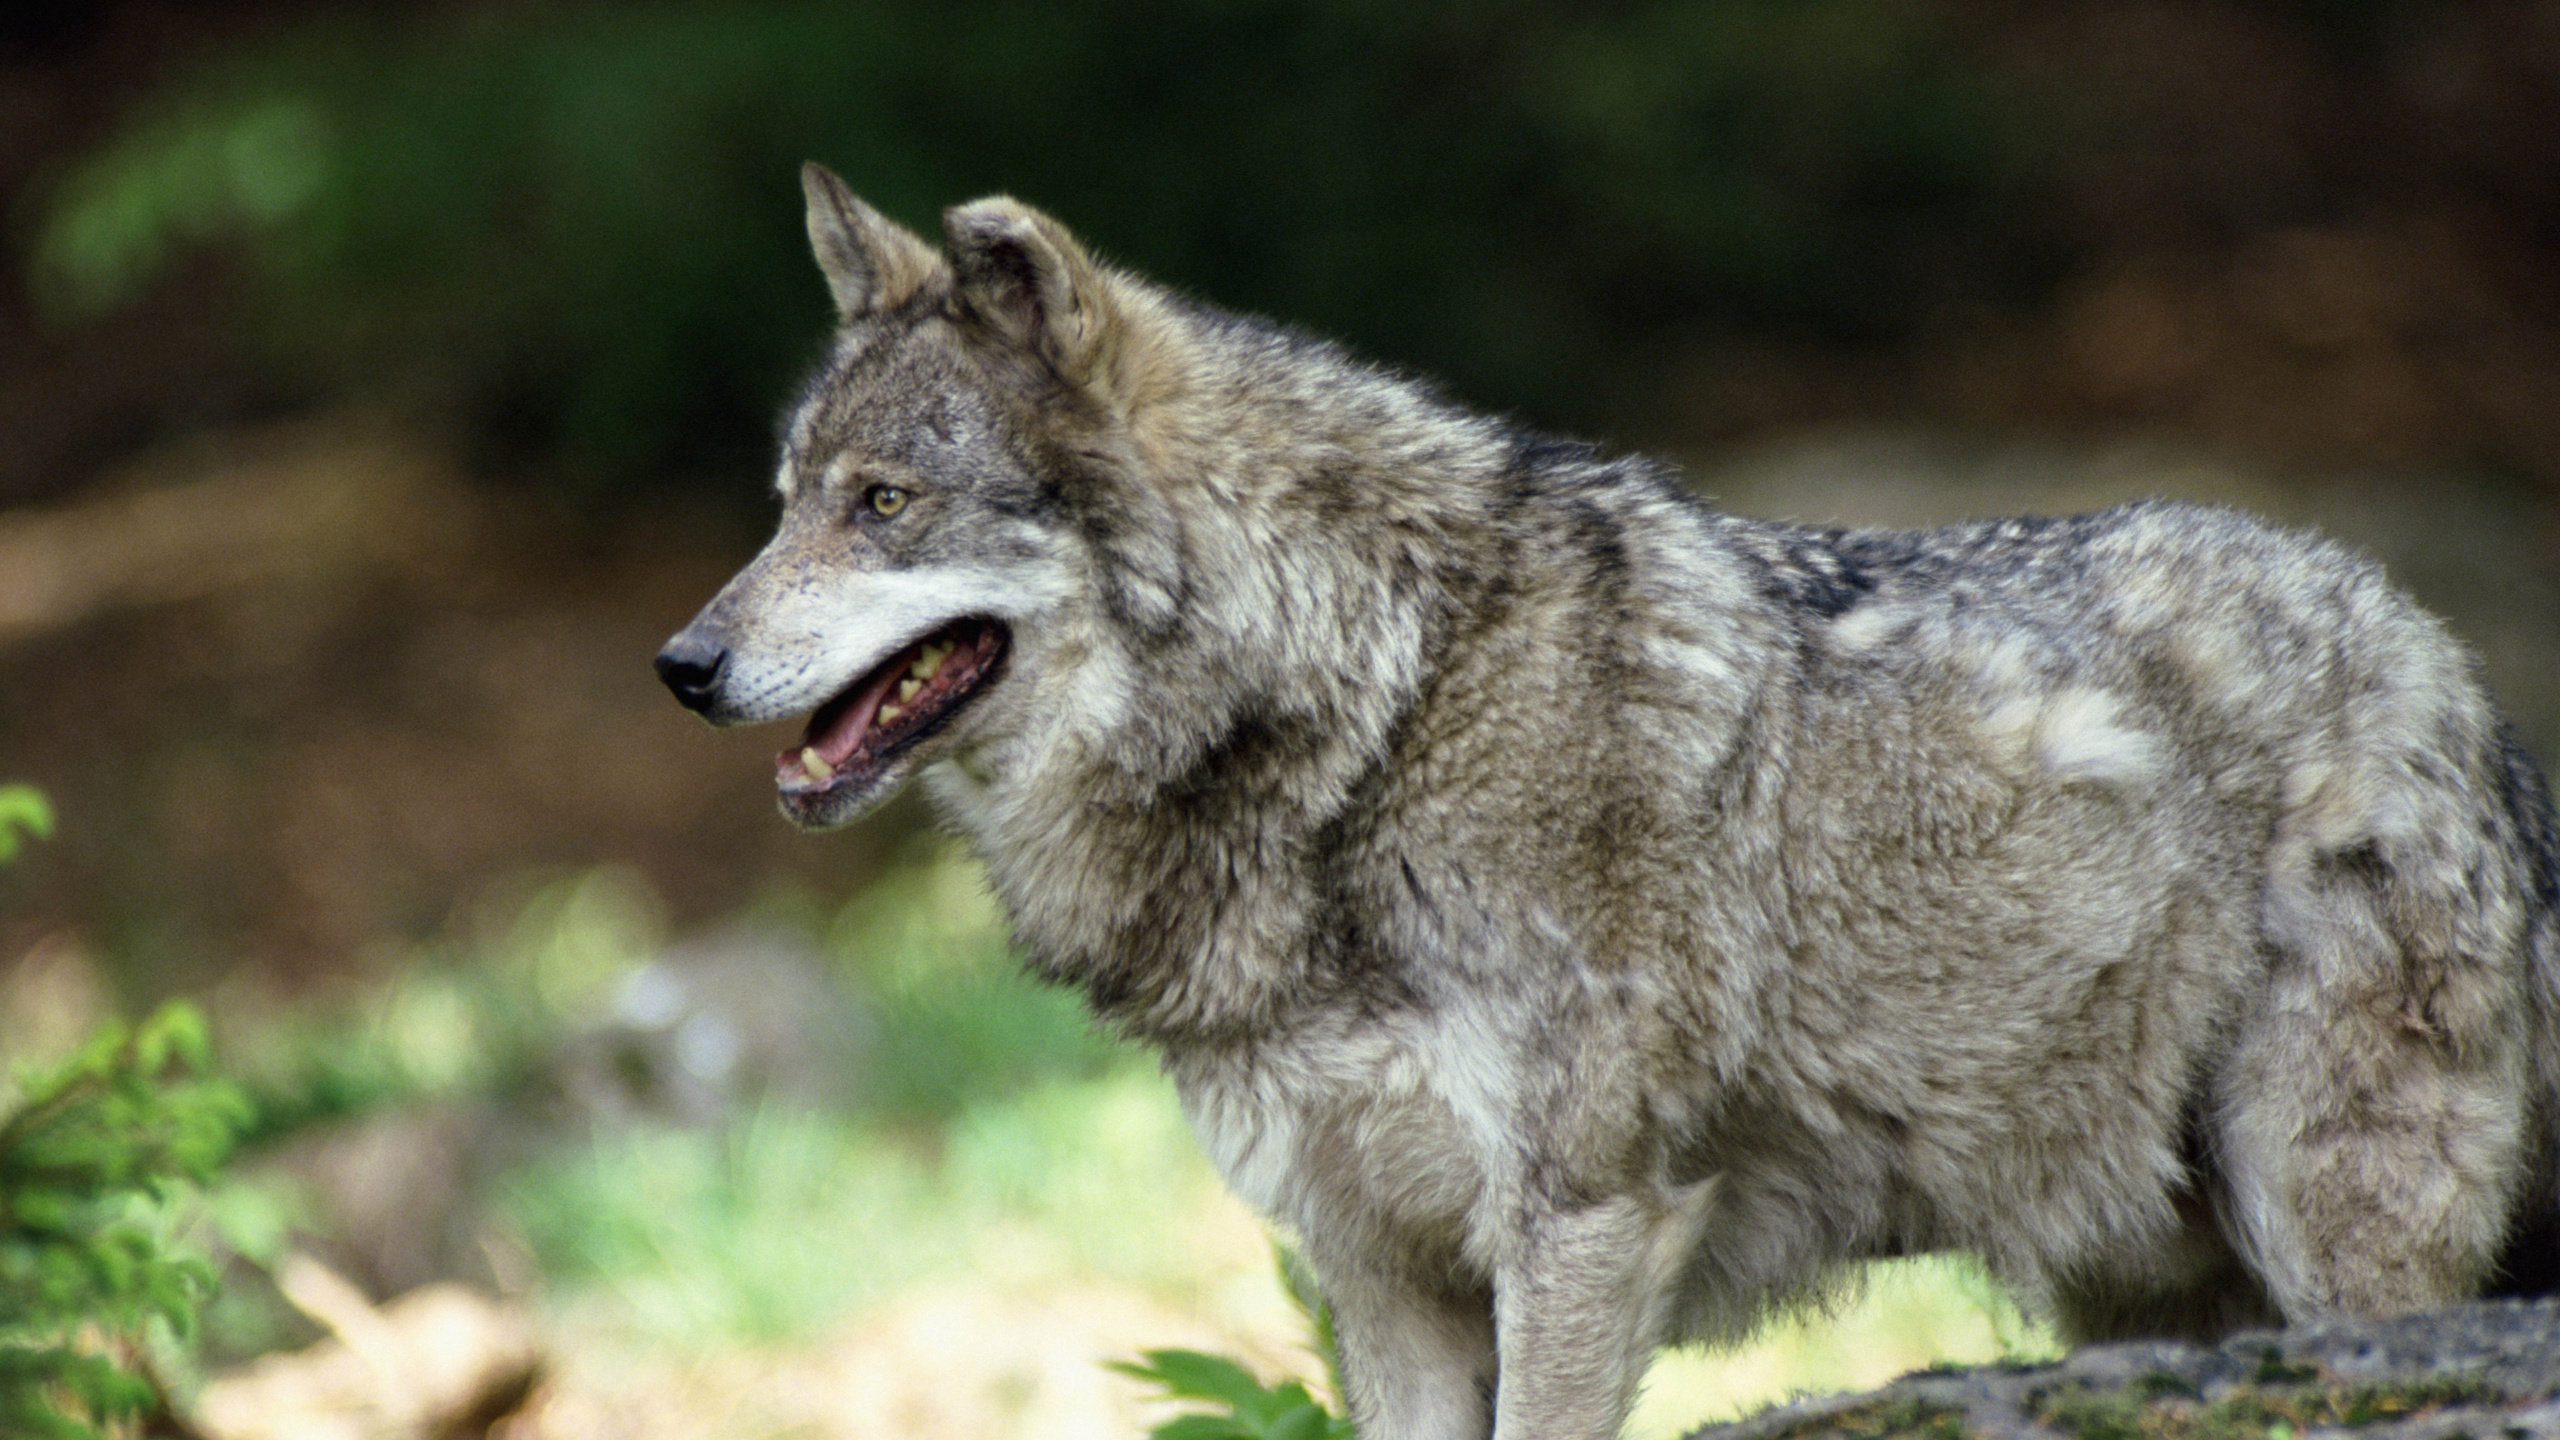 狼, 野生动物, 面部表情, Saarloos那只狼狗, 那只狼狗 壁纸 2560x1440 允许